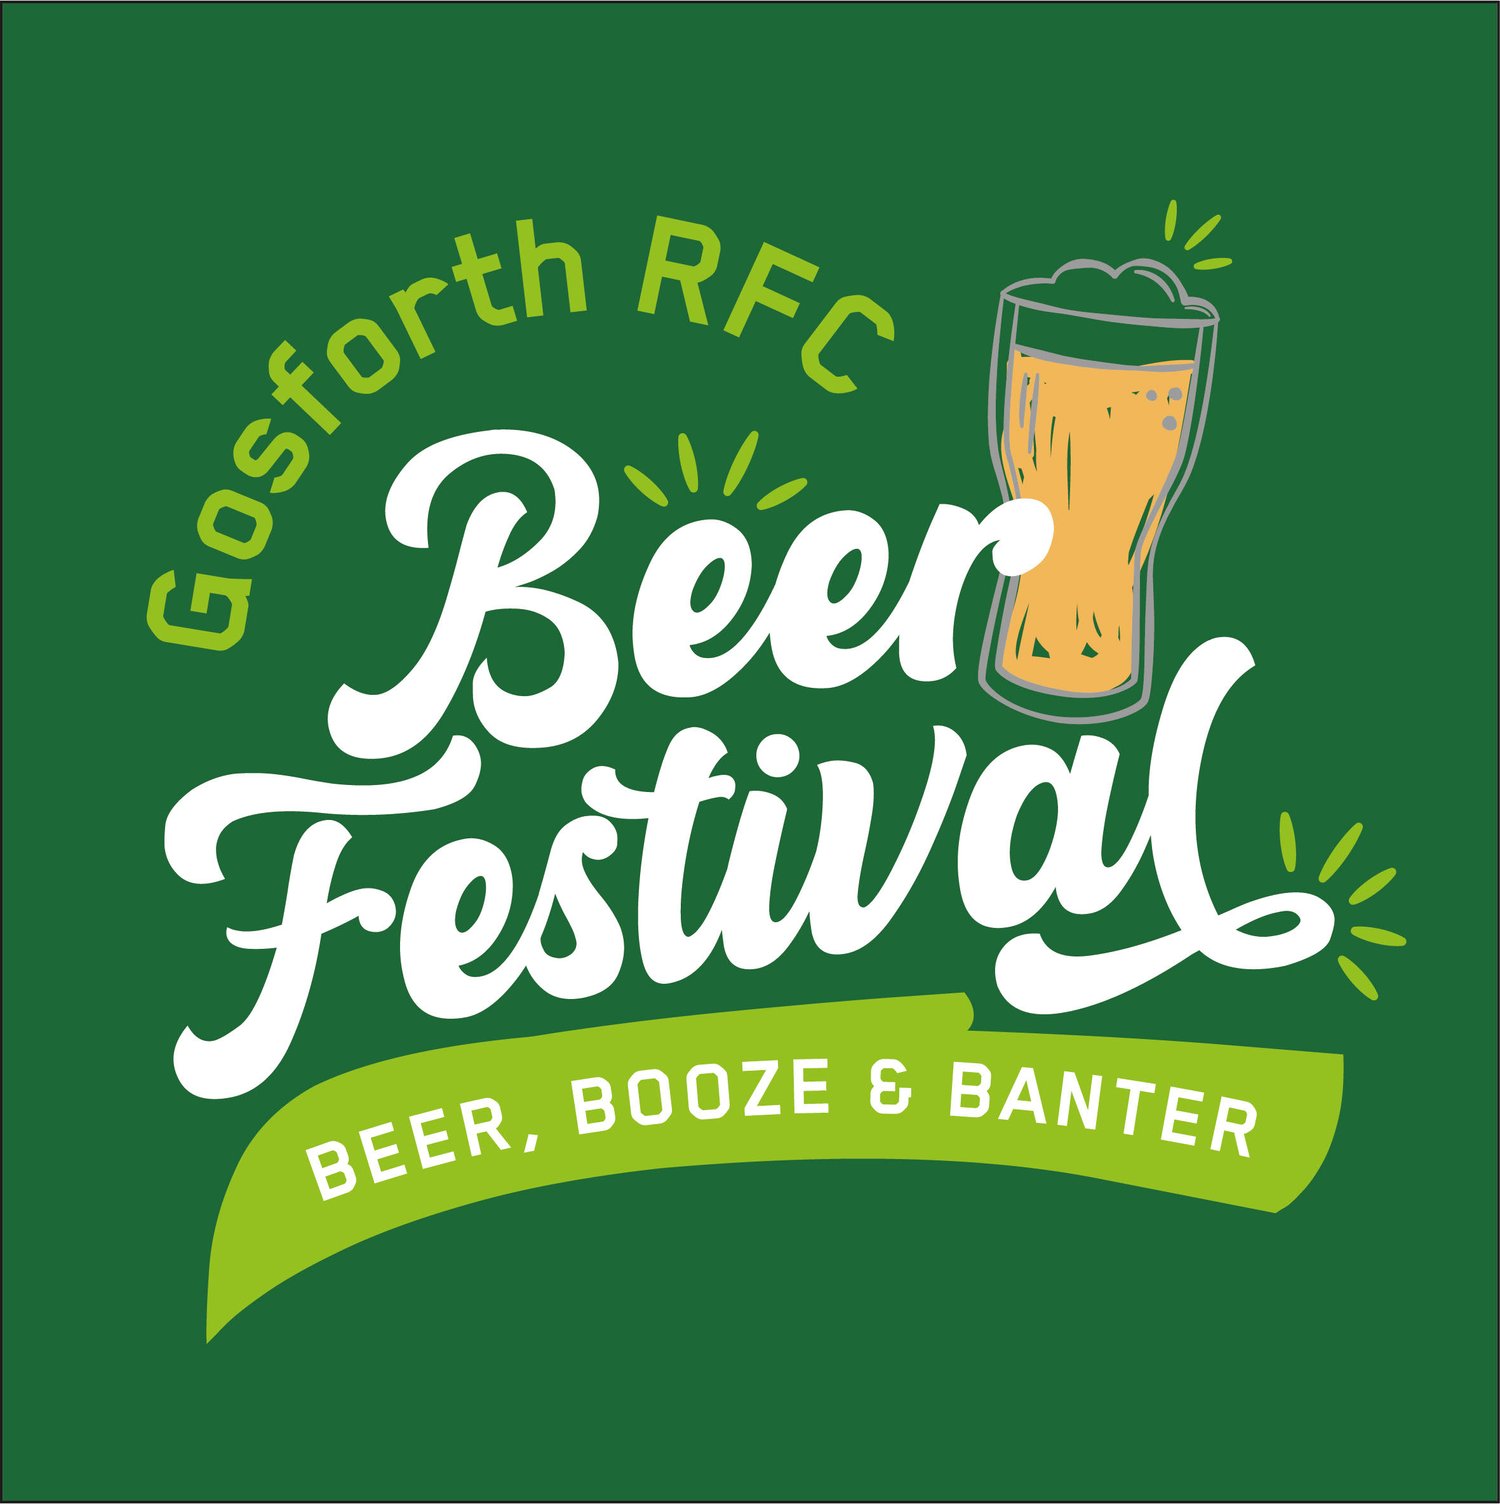 Gosforth Rugby Club Beer Festival